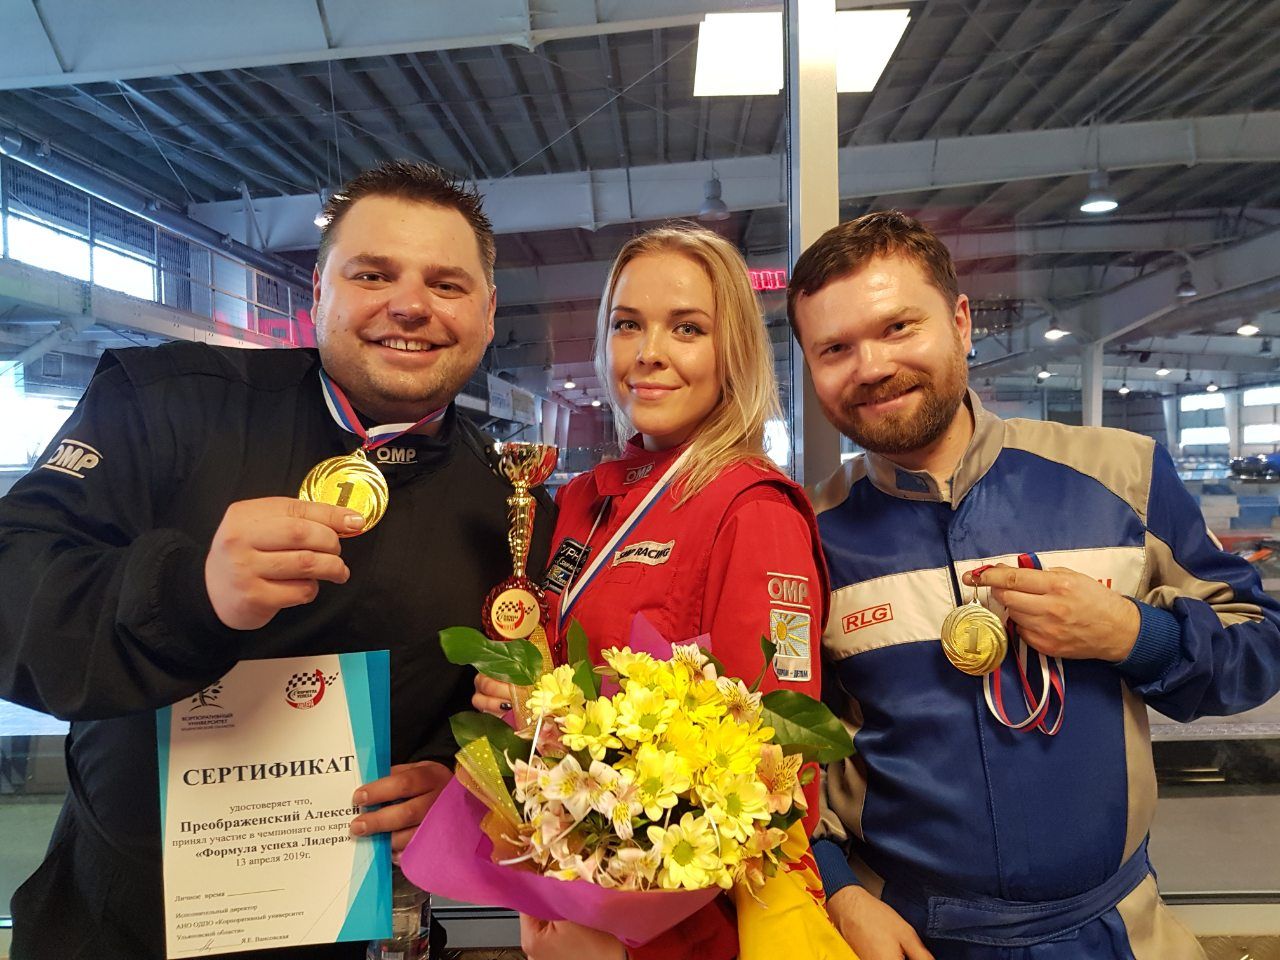 Ульяновские юристы победили в соревнованиях по картингу